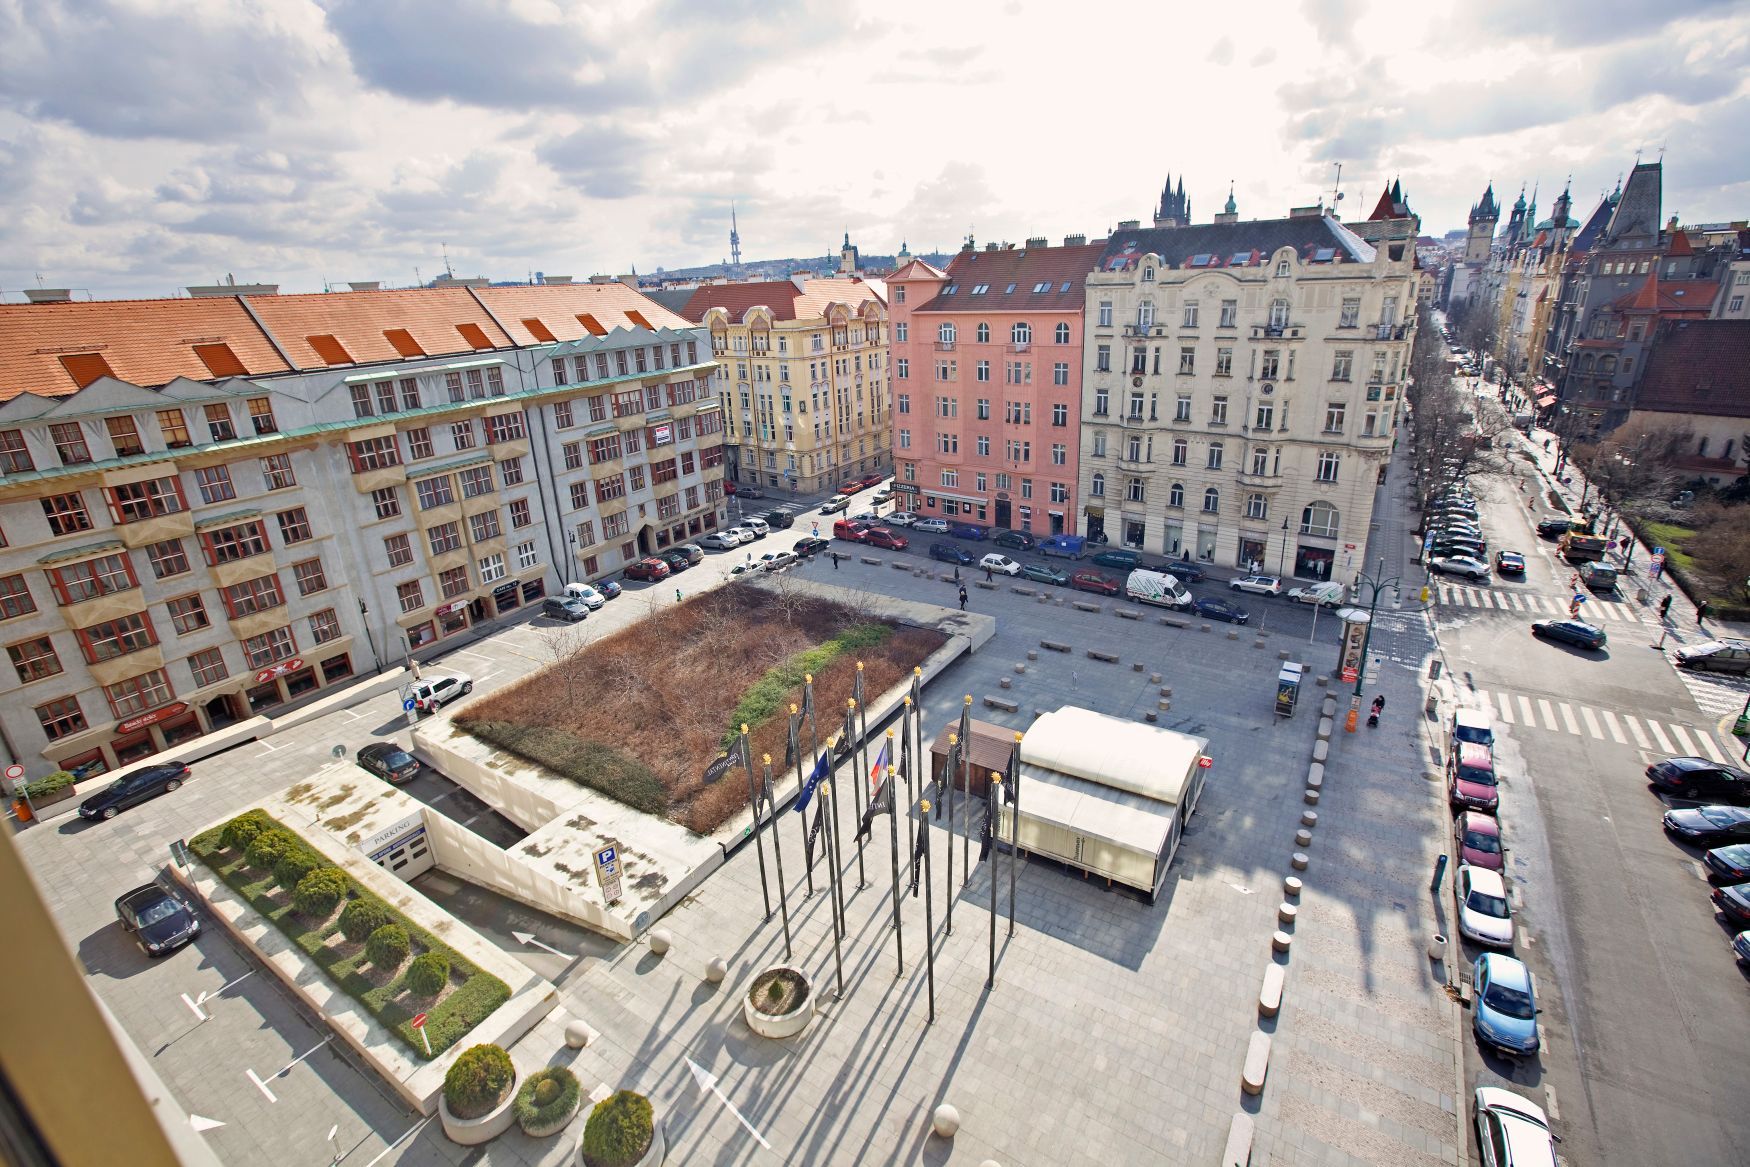 Piazzetta před hotelem InterContinental na pražském Starém Městě.